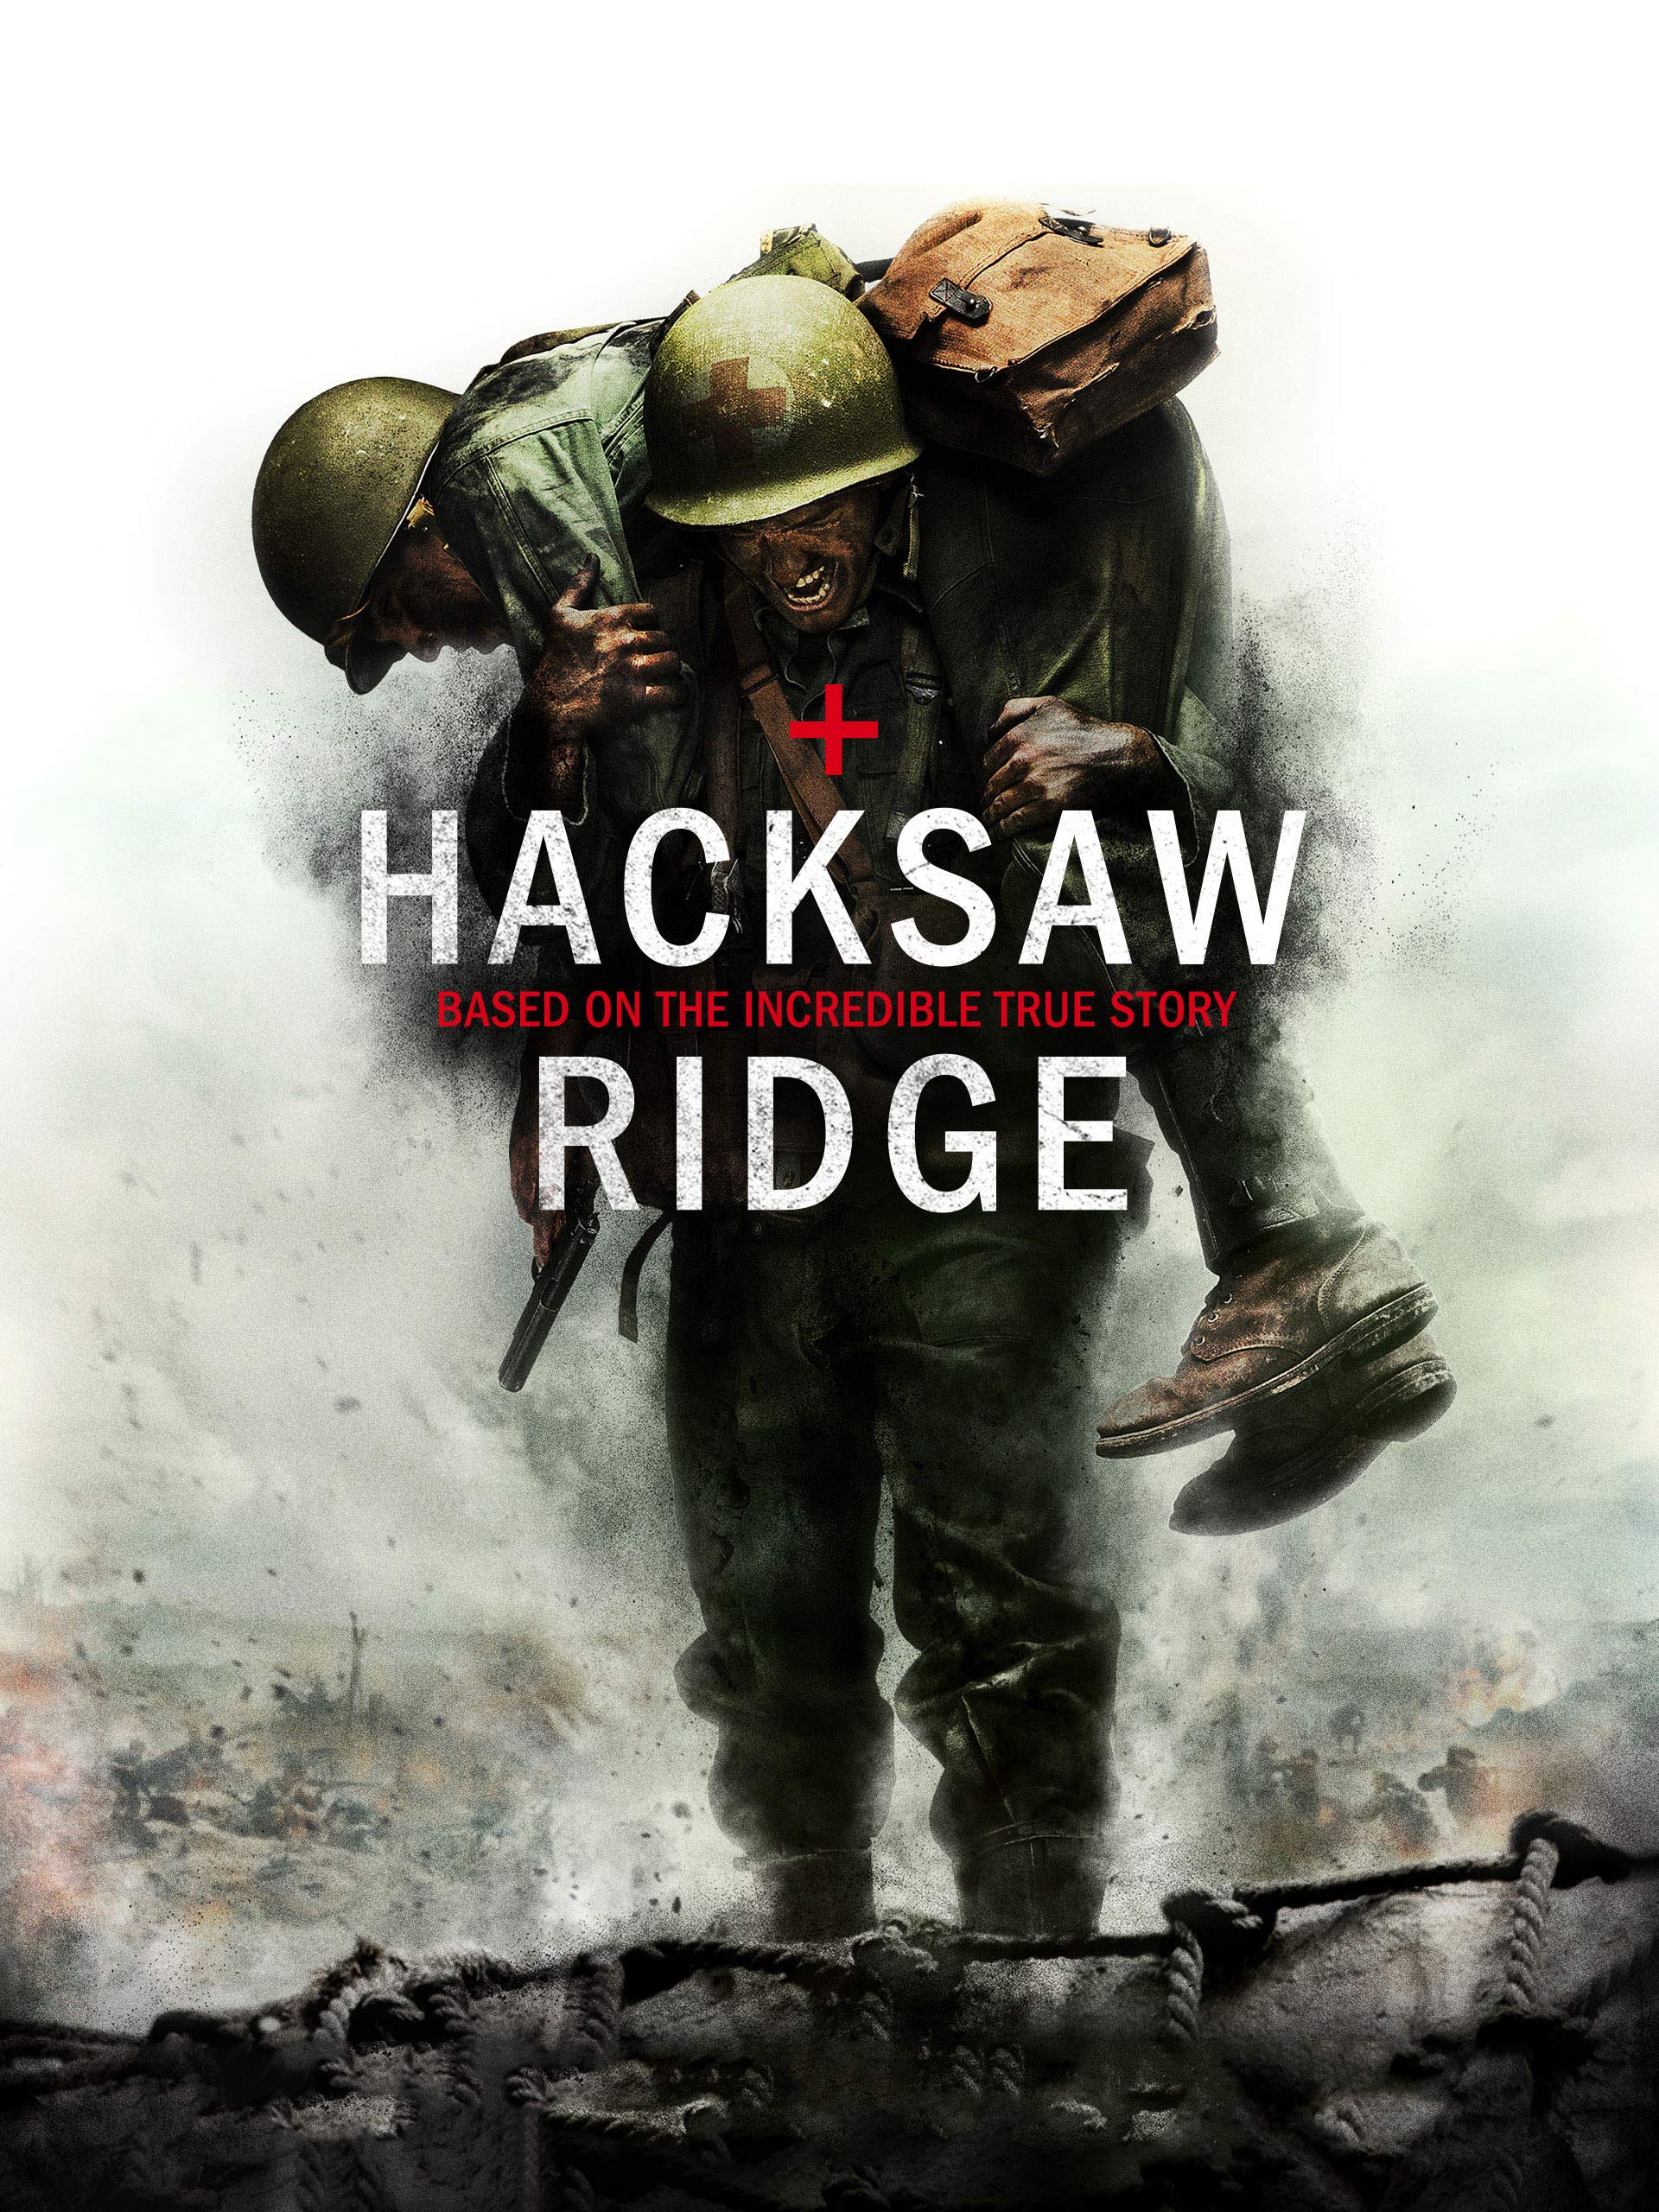 Hacksaw Ridge Wallpapers - Top Free Hacksaw Ridge ...